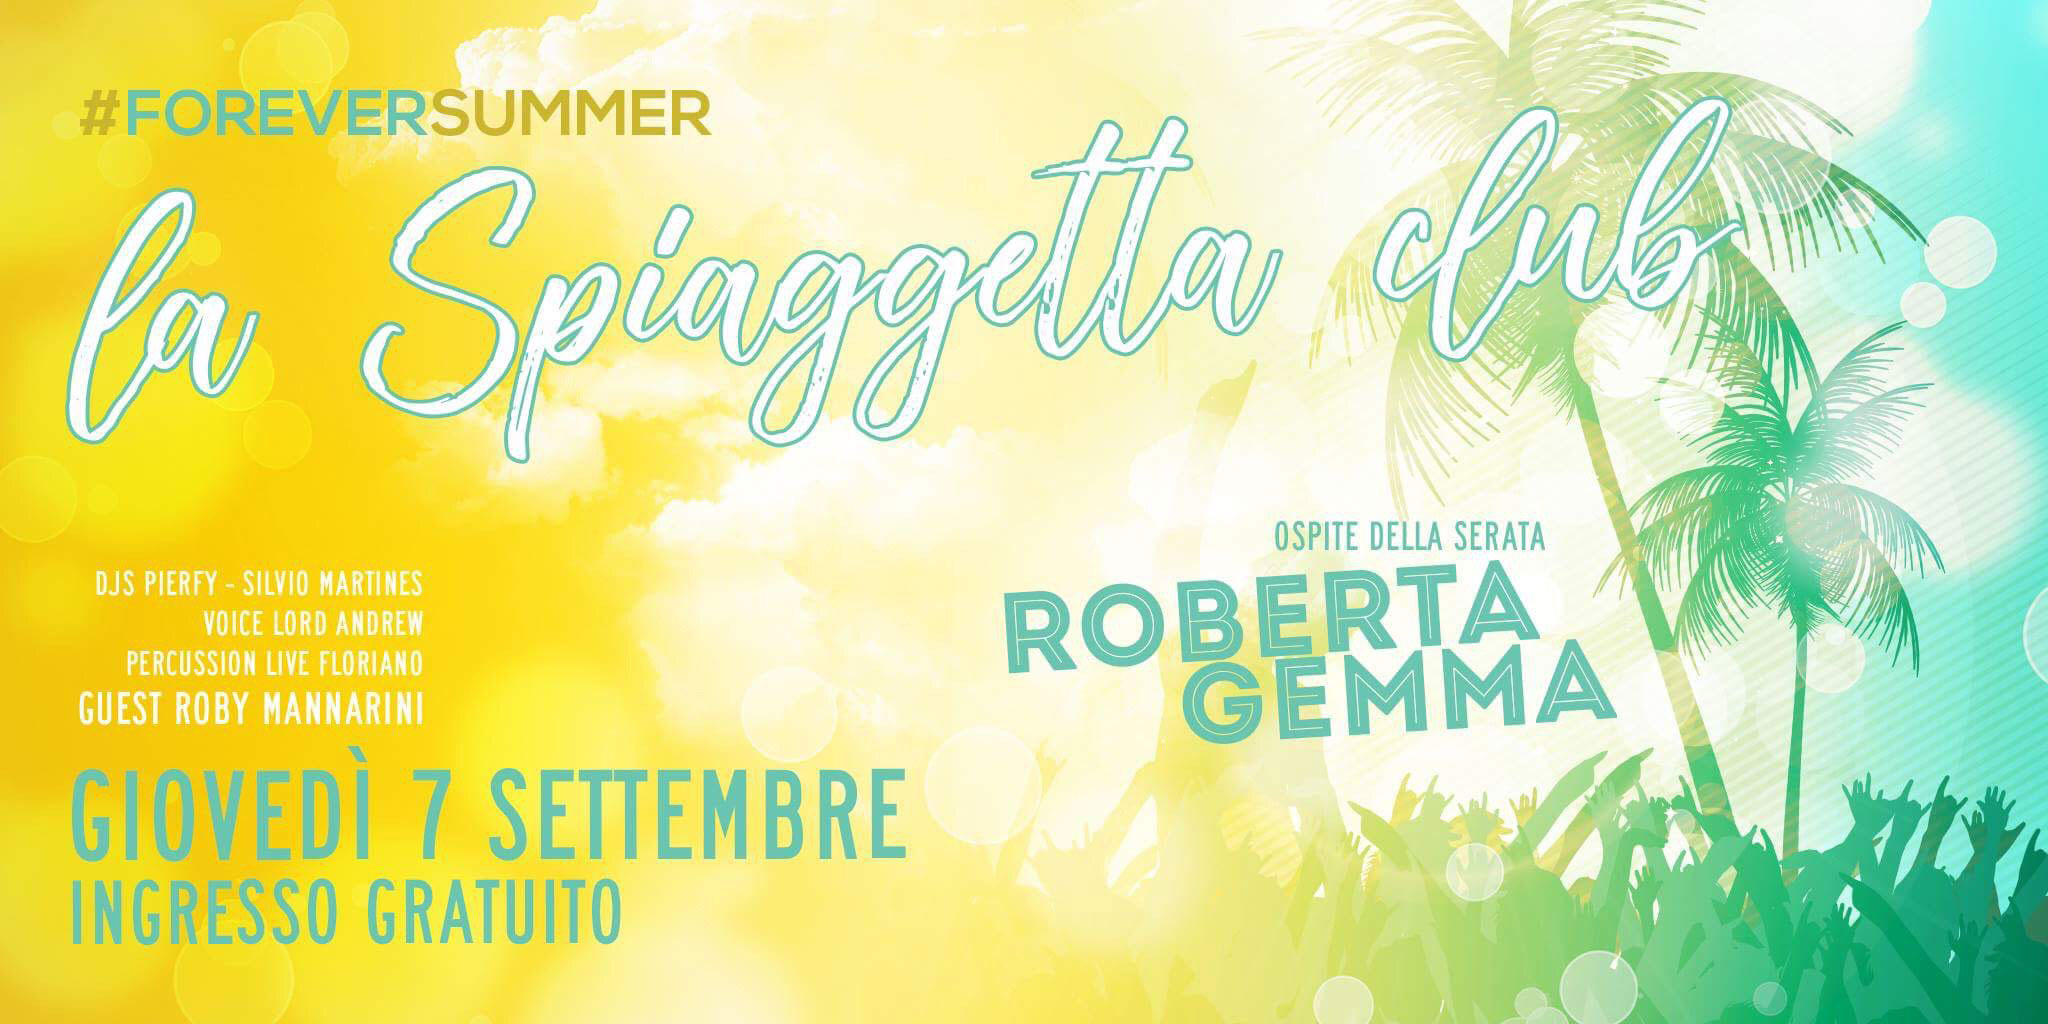 La Spiaggetta Club by Night VIII - Roberta Gemma